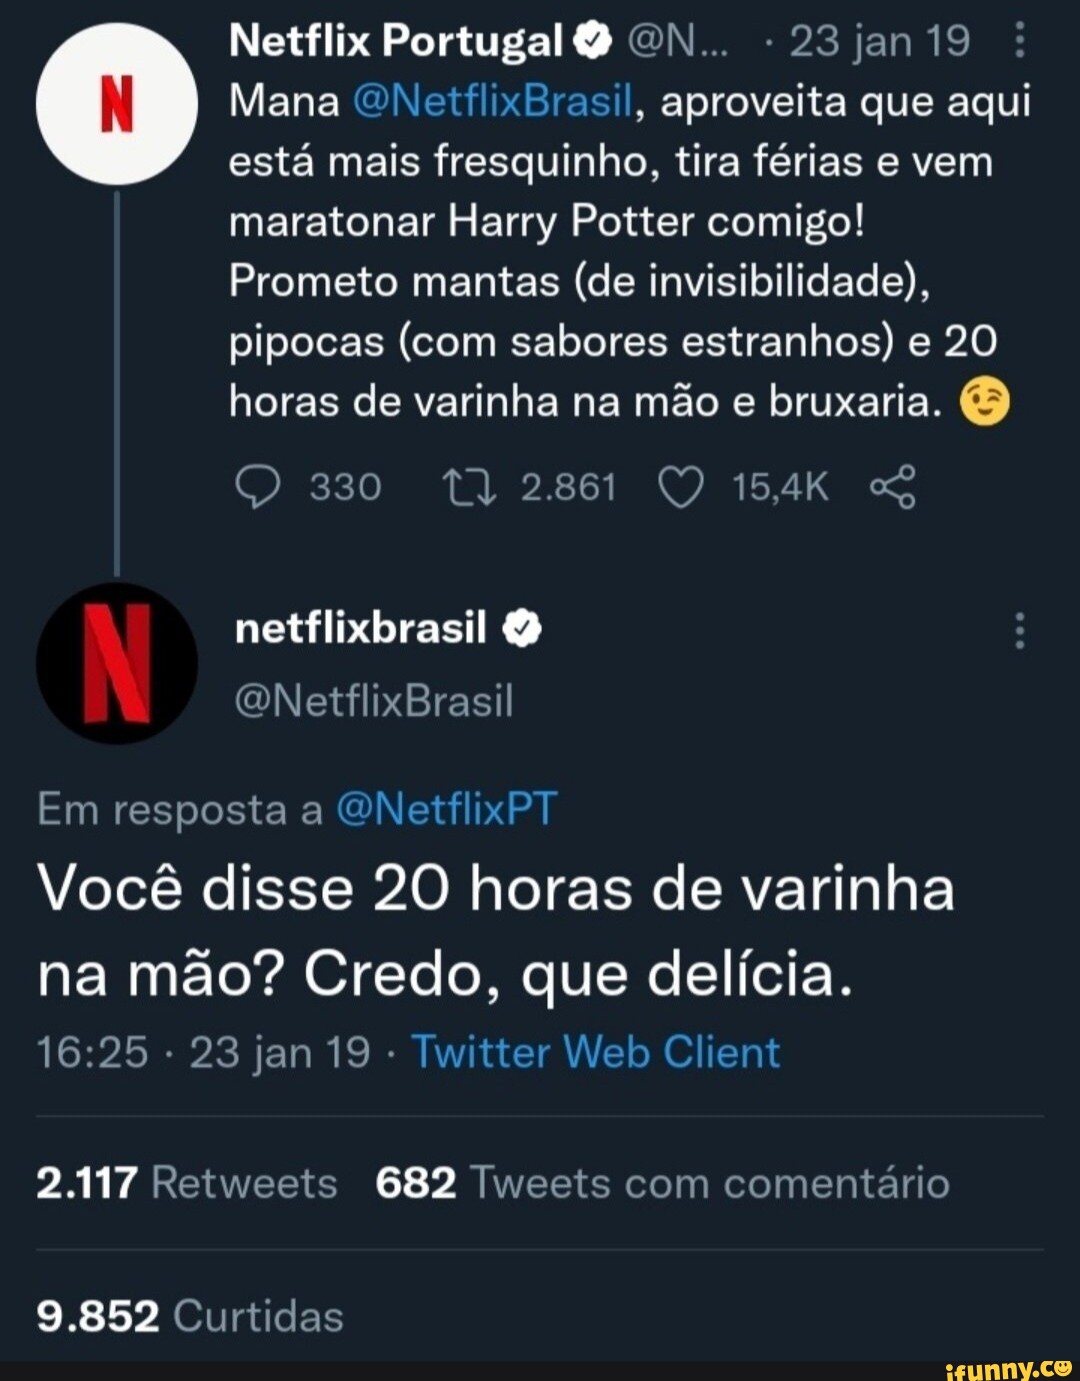 Netflix Portugal EN -23jan19 Mana ONetflixBrasil, aproveita que